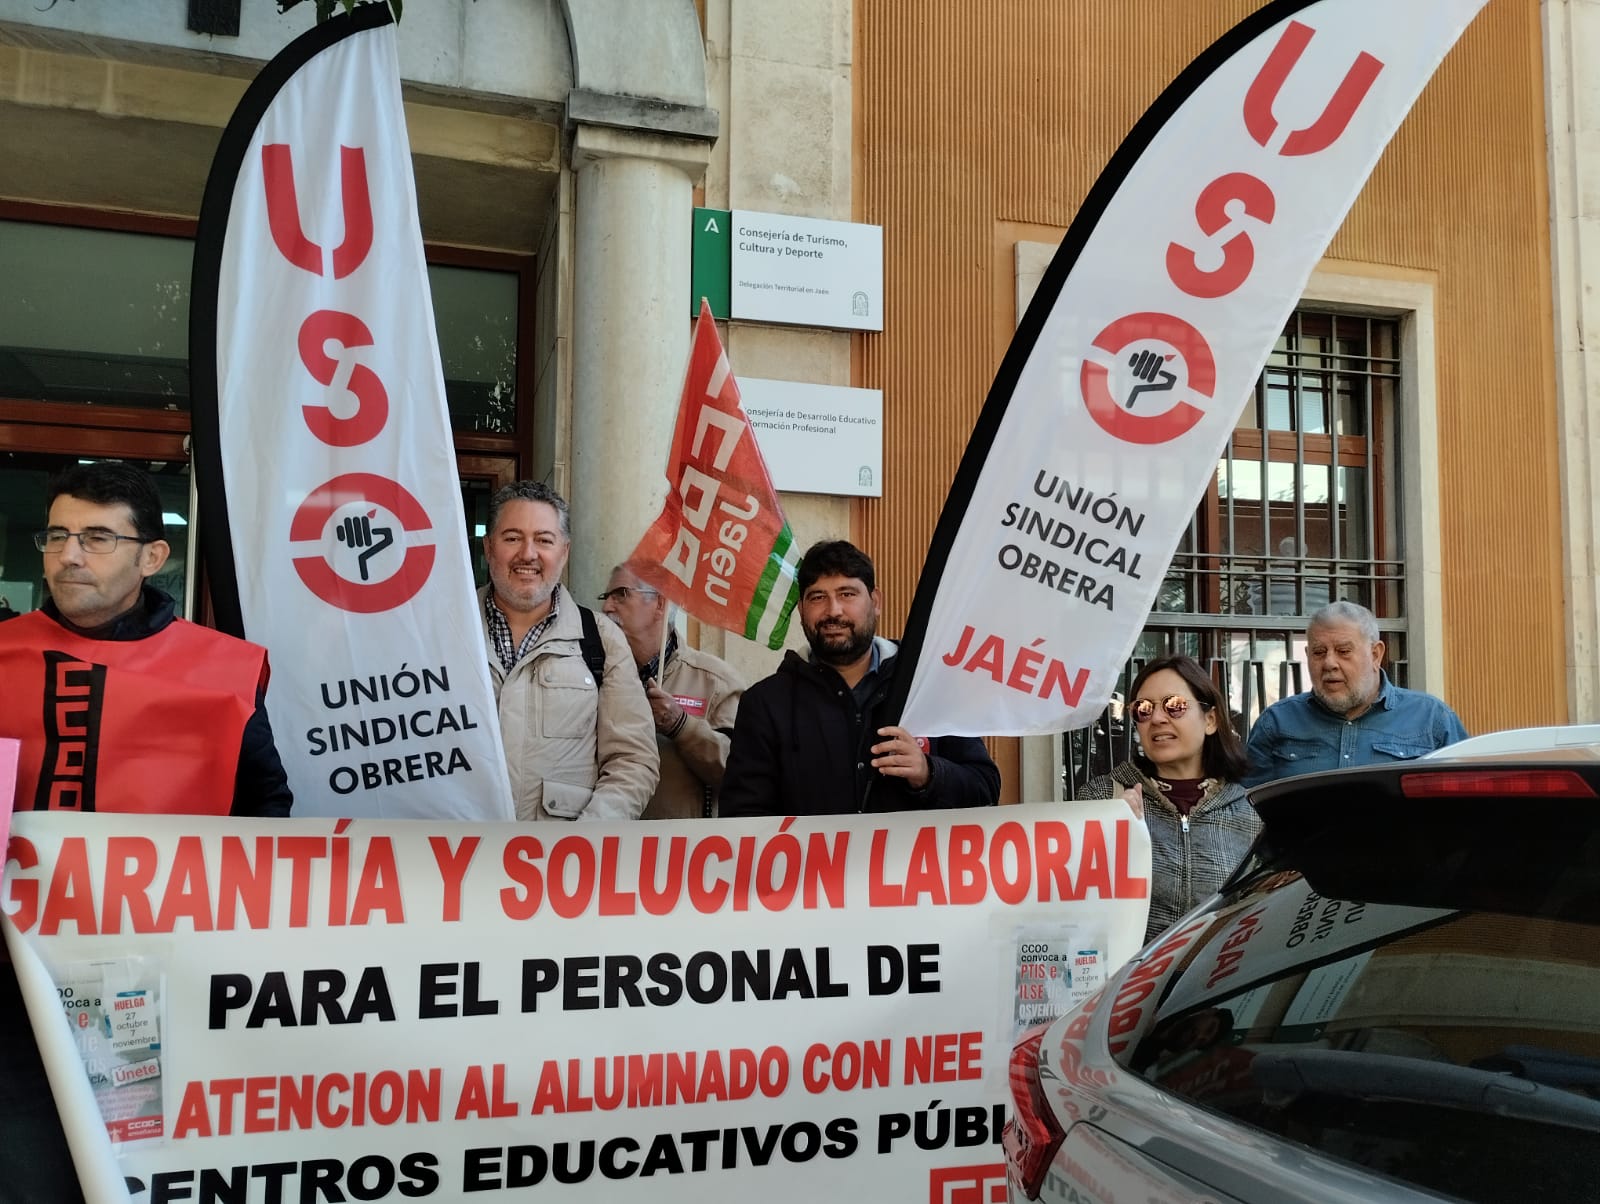 El sindicato USO apoya a las profesionales de integración social en huelga y reclama a la Junta de Andalucía equiparación laboral y salarial respecto a las compañeras que desempeñan el mismo trabajo y sí son empleadas públicas